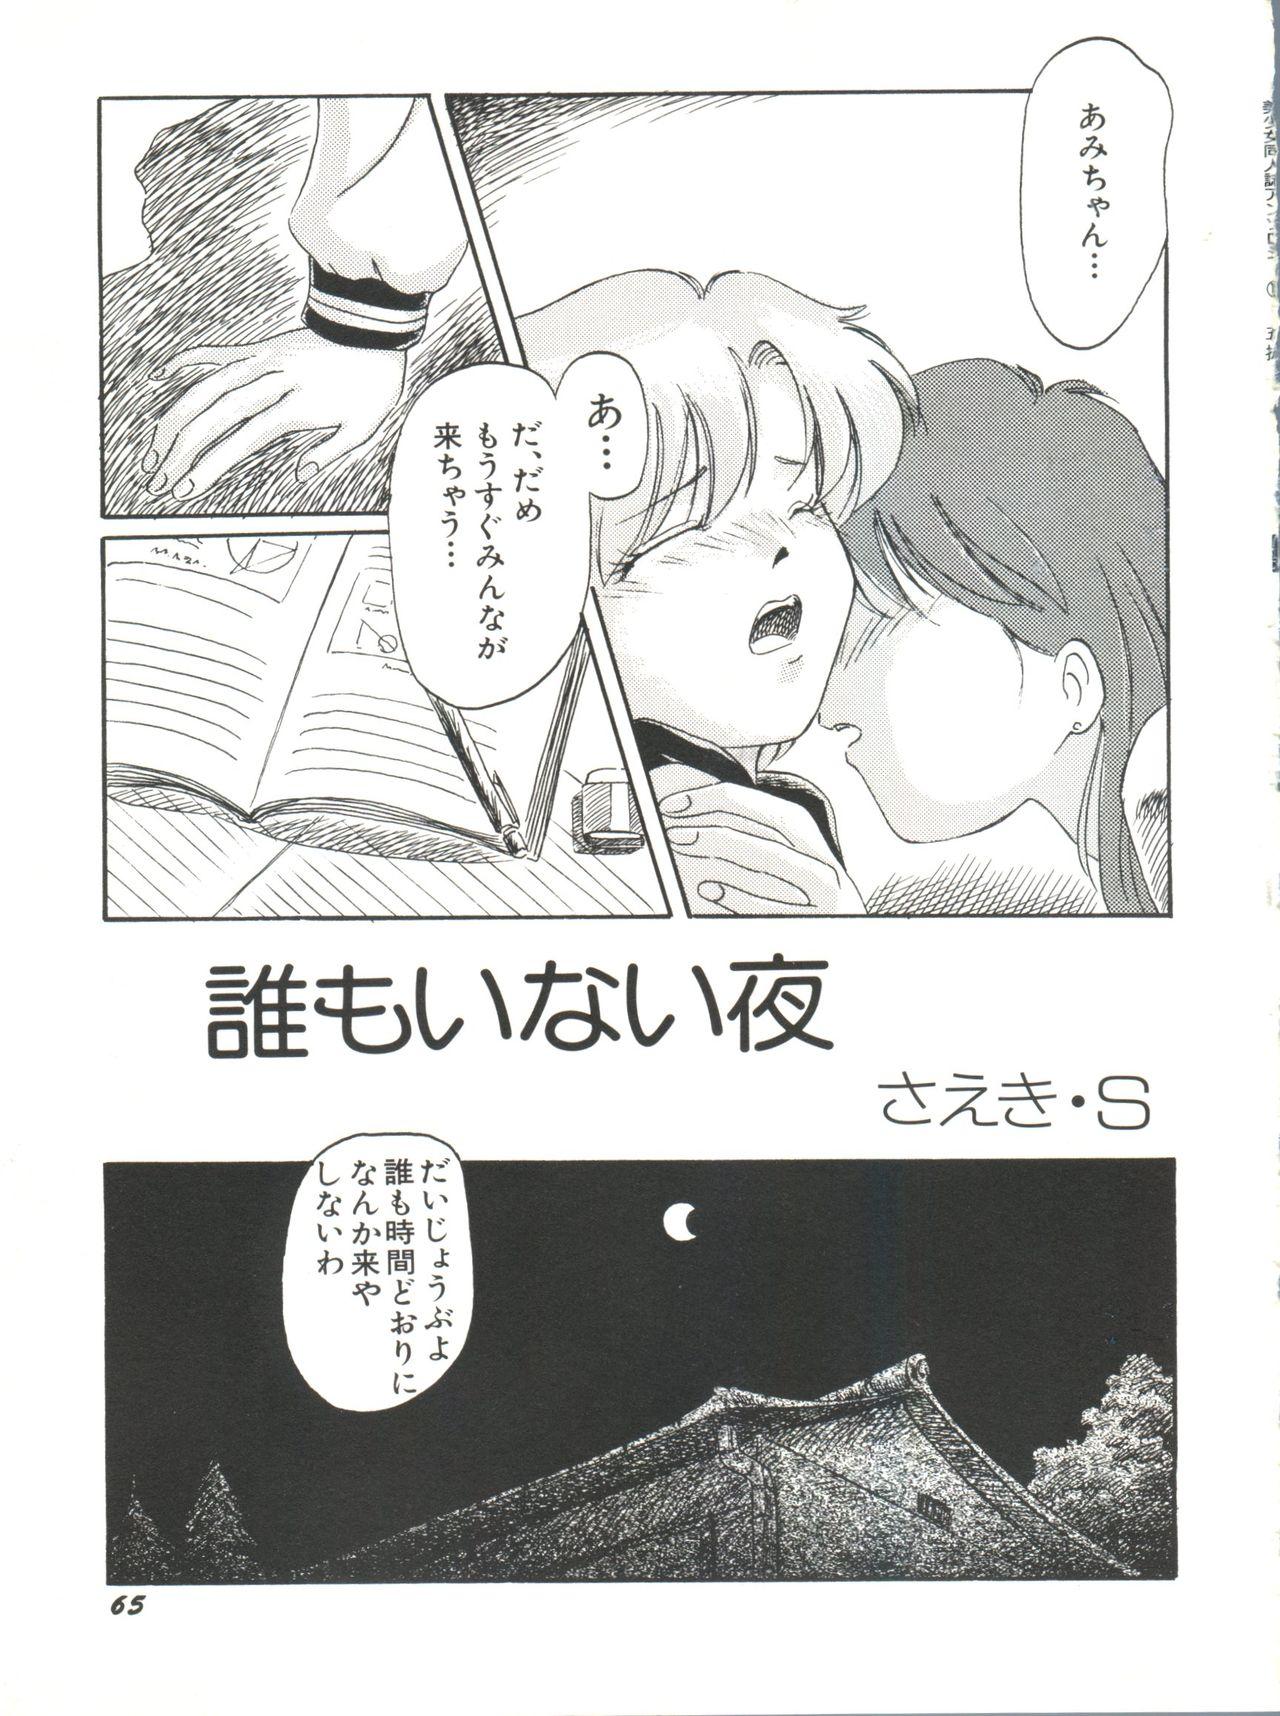 Bishoujo Doujinshi Anthology 15 - Moon Paradise 9 Tsuki no Rakuen 66